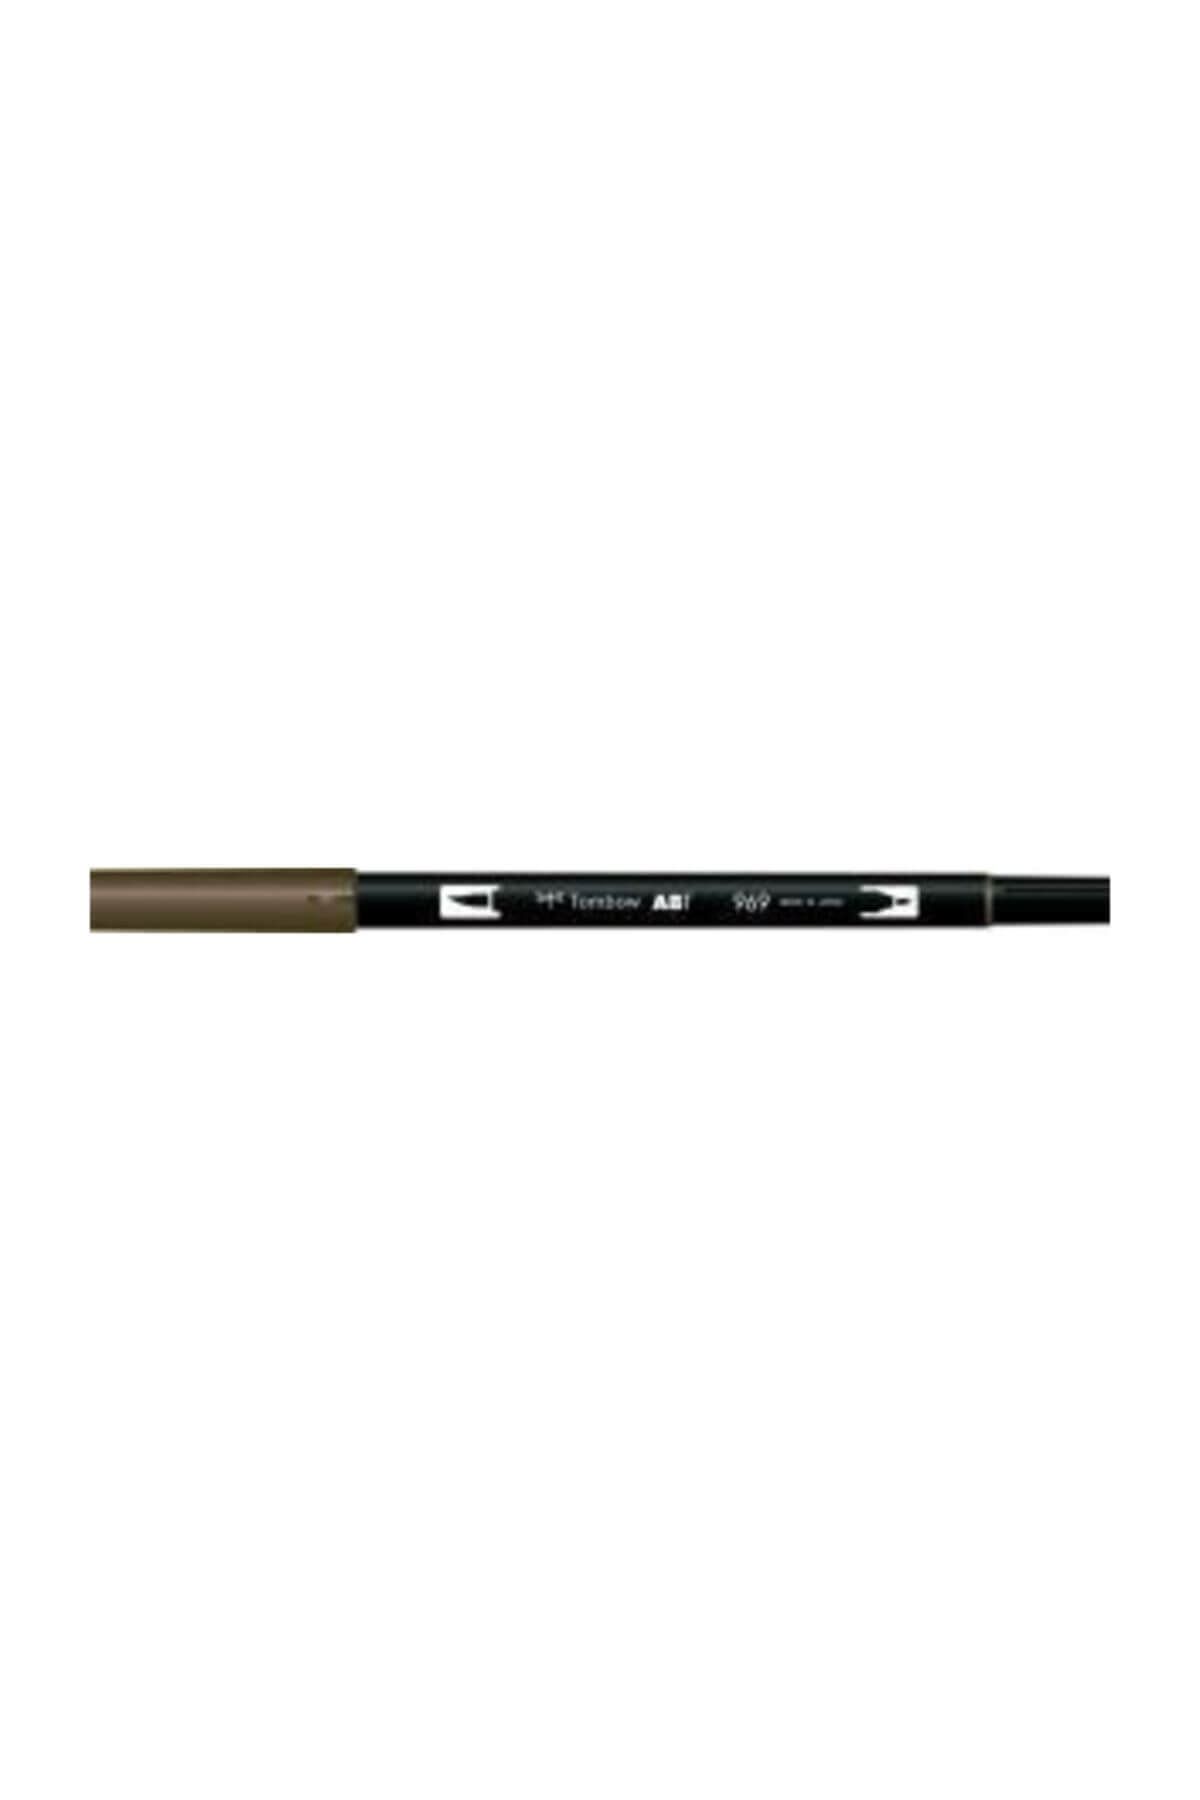 Tombow Ab-t Dual Brush Pen Grafik Kalemi Chocolate 969